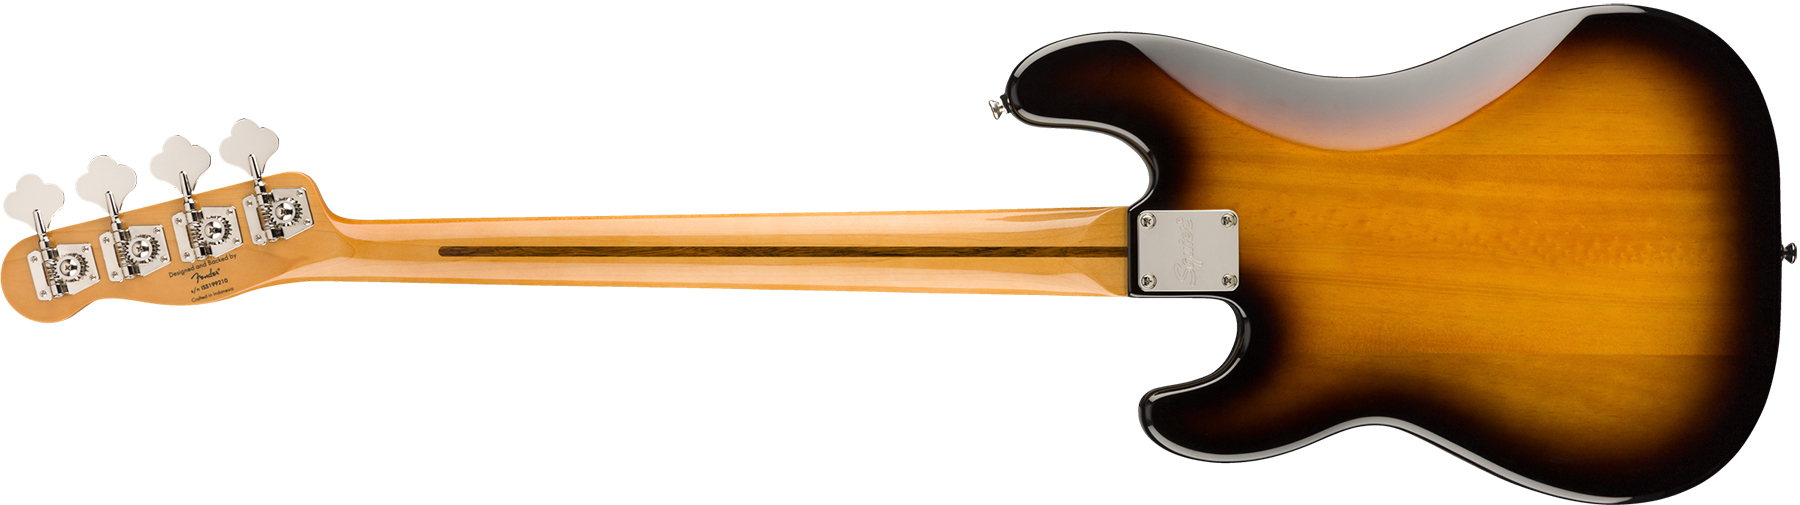 Squier Precision Bass '50s Classic Vibe 2019 Mn - 2-color Sunburst - Basse Électrique Solid Body - Variation 1